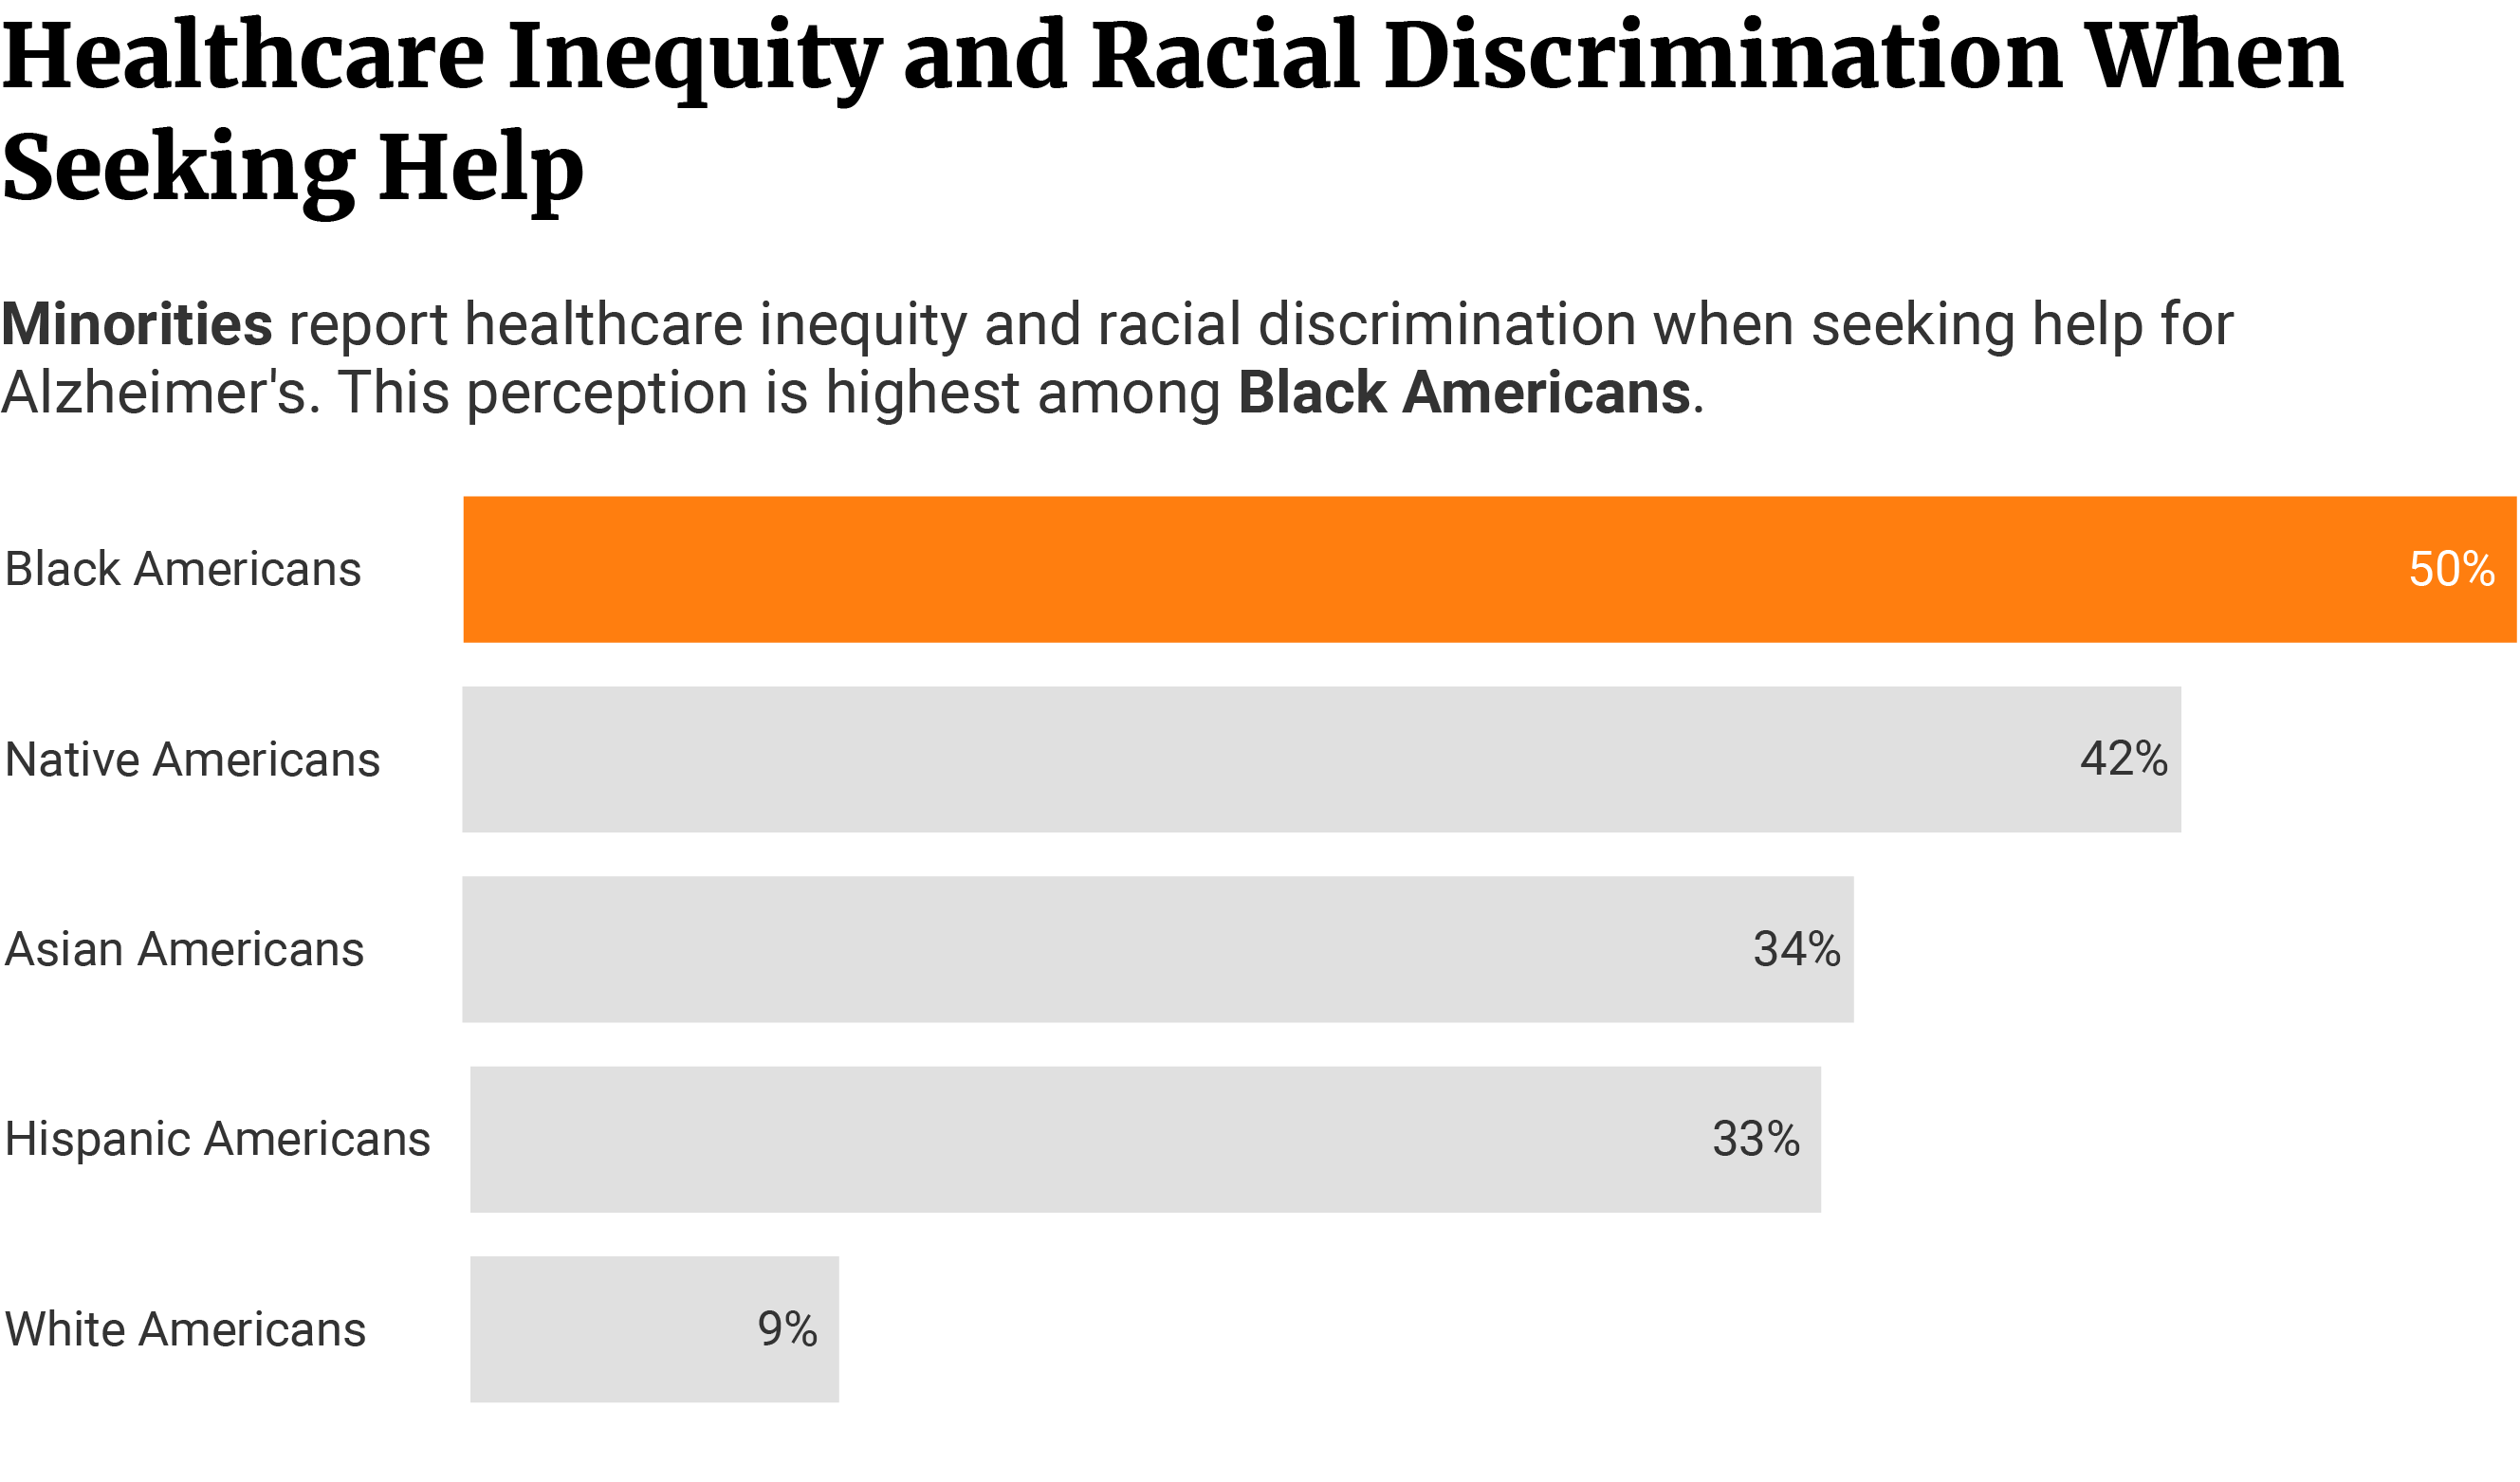 Horizontal bars showing Blacks experience more racial discrimination at 50%, Natives at 42%, Asians at 34%, and Hispanics at 33% than Whites at 9%.